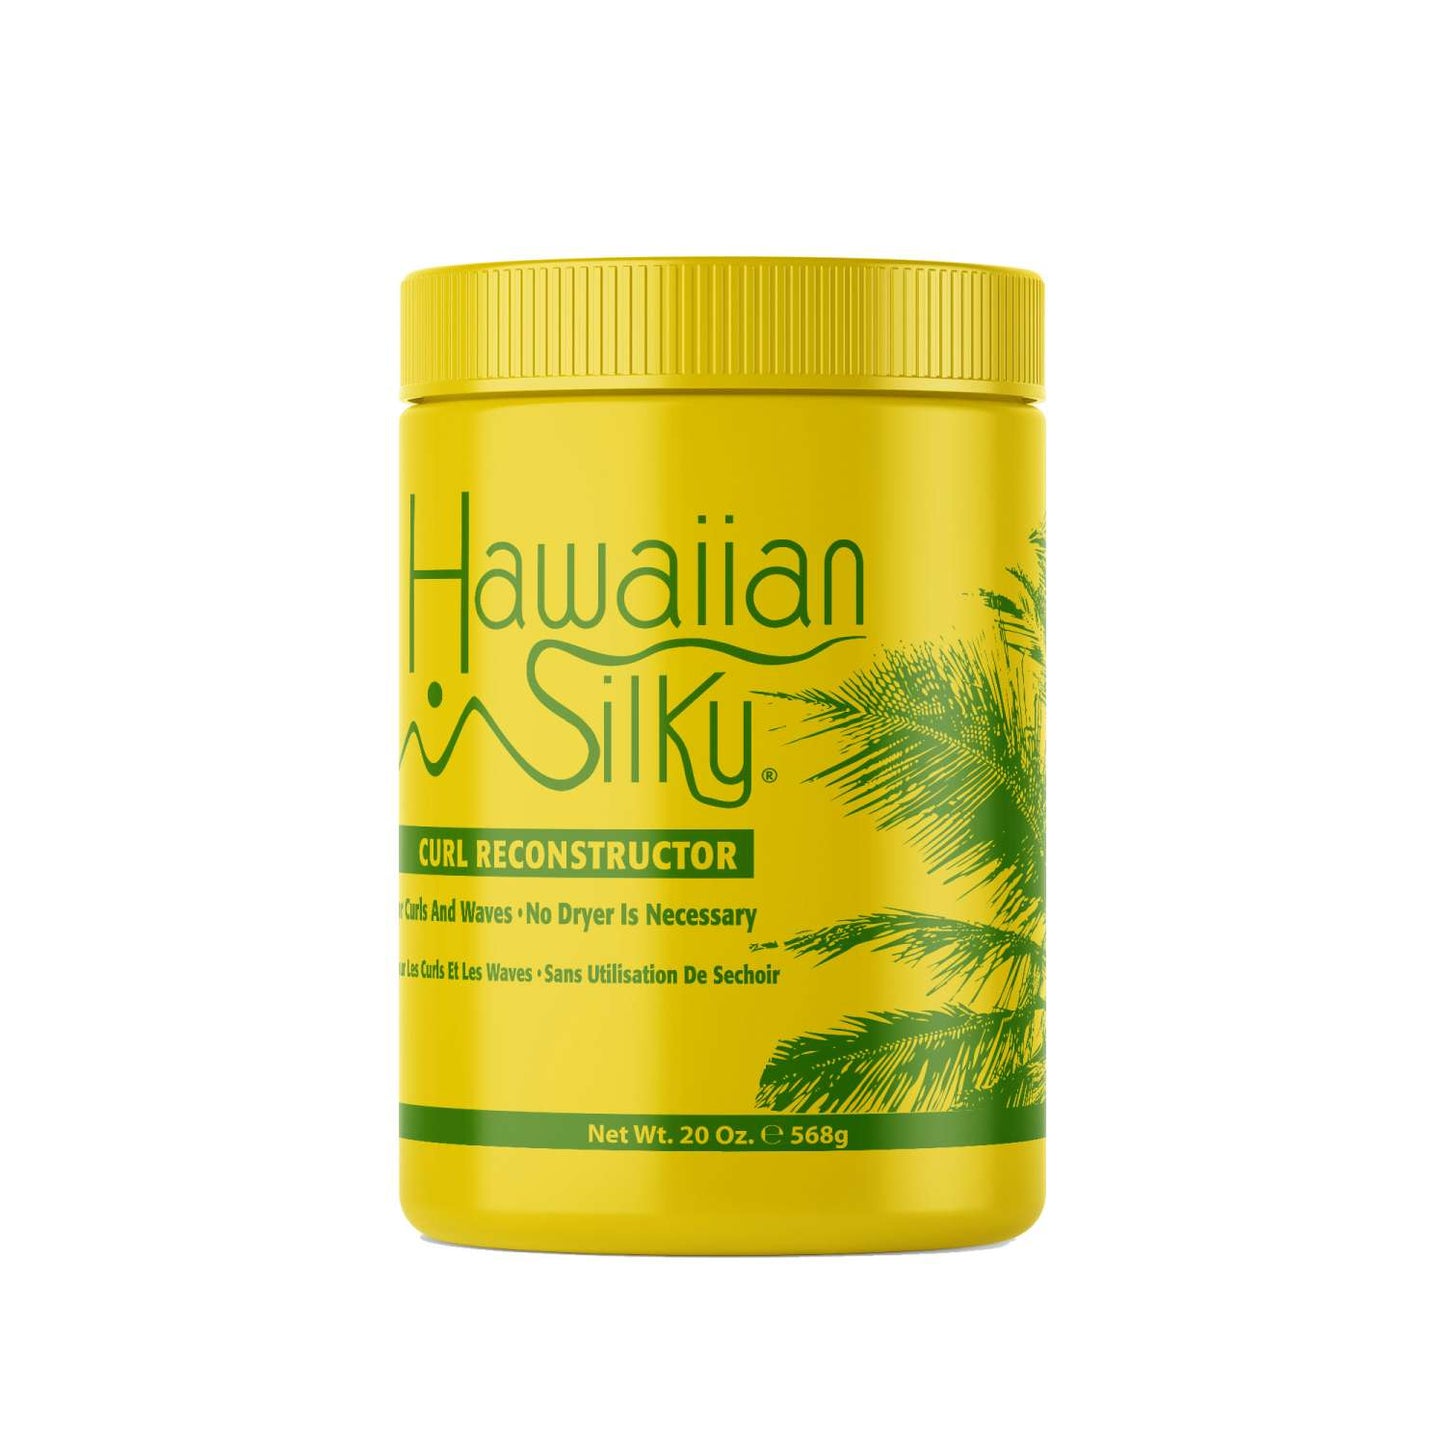 Hawaiian Silky Reconstructor Yellow 20 Oz